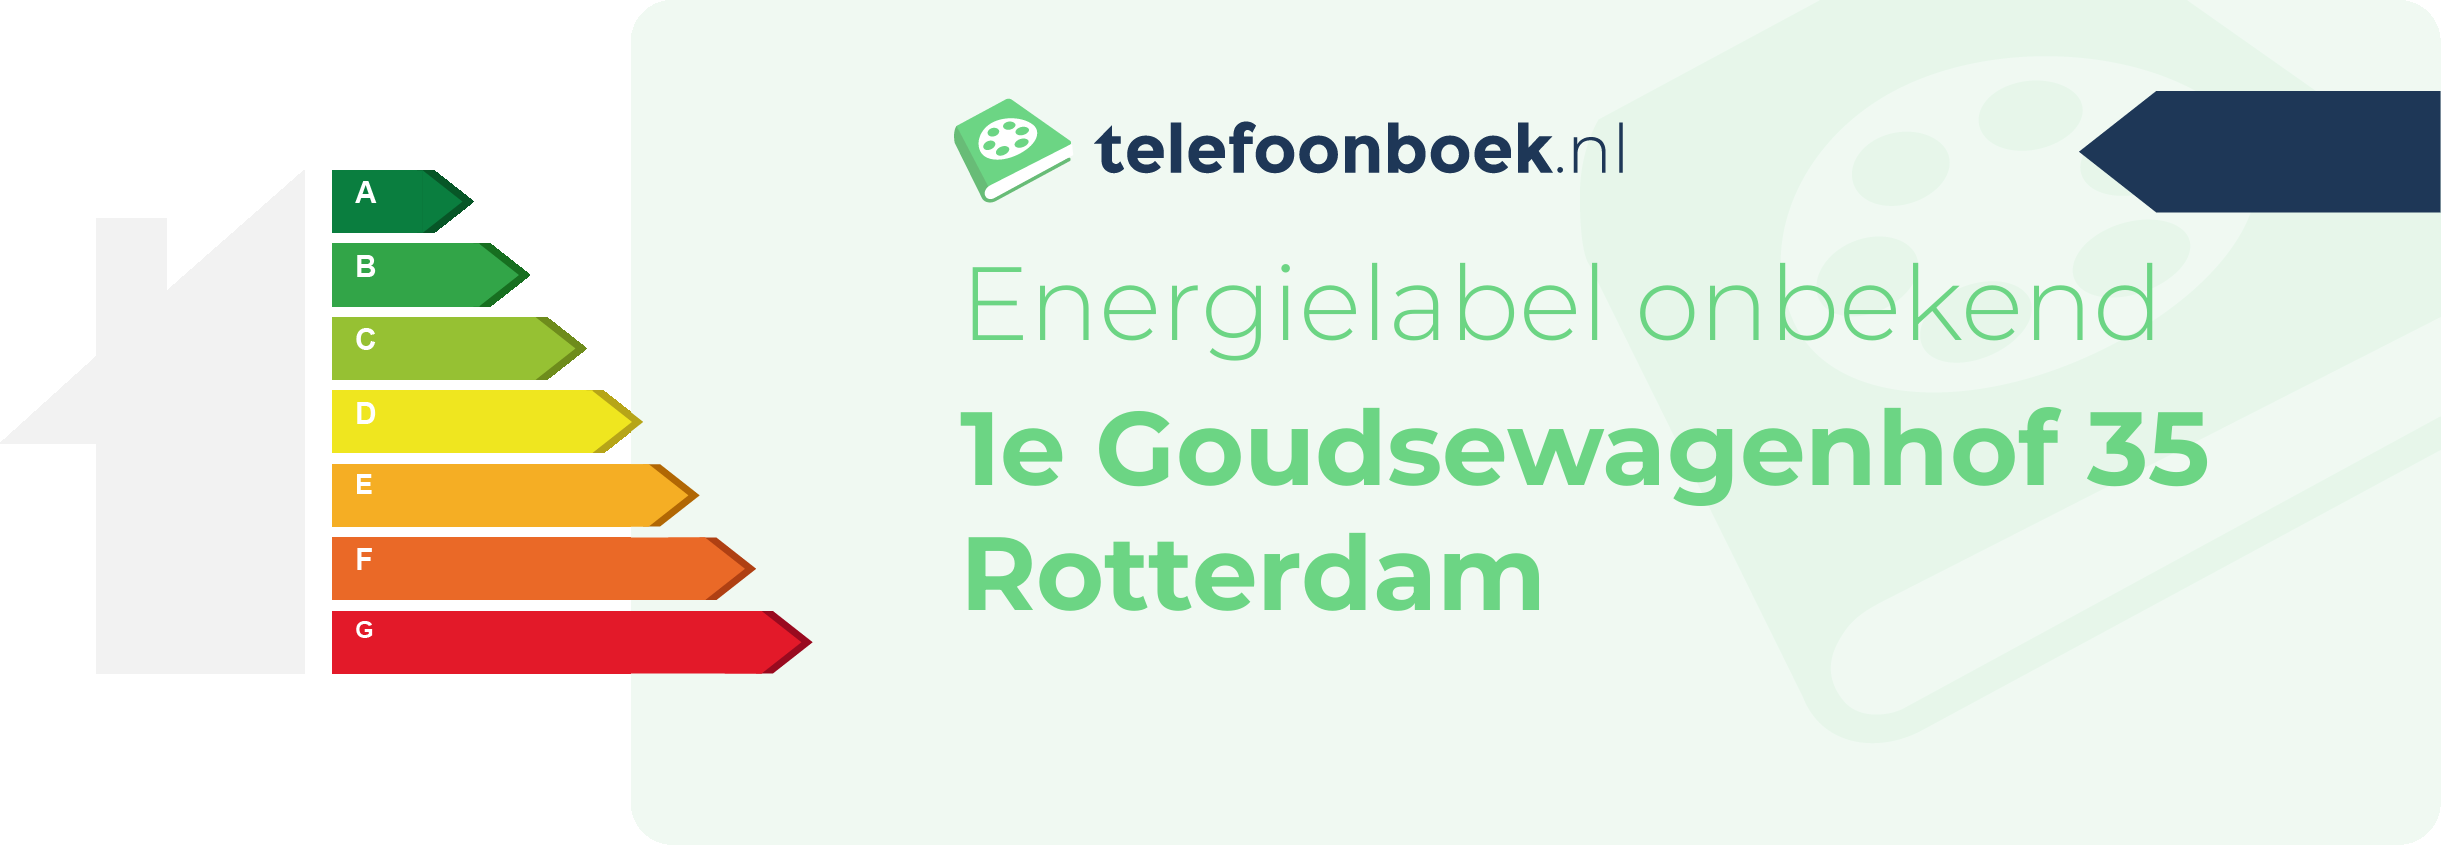 Energielabel 1e Goudsewagenhof 35 Rotterdam